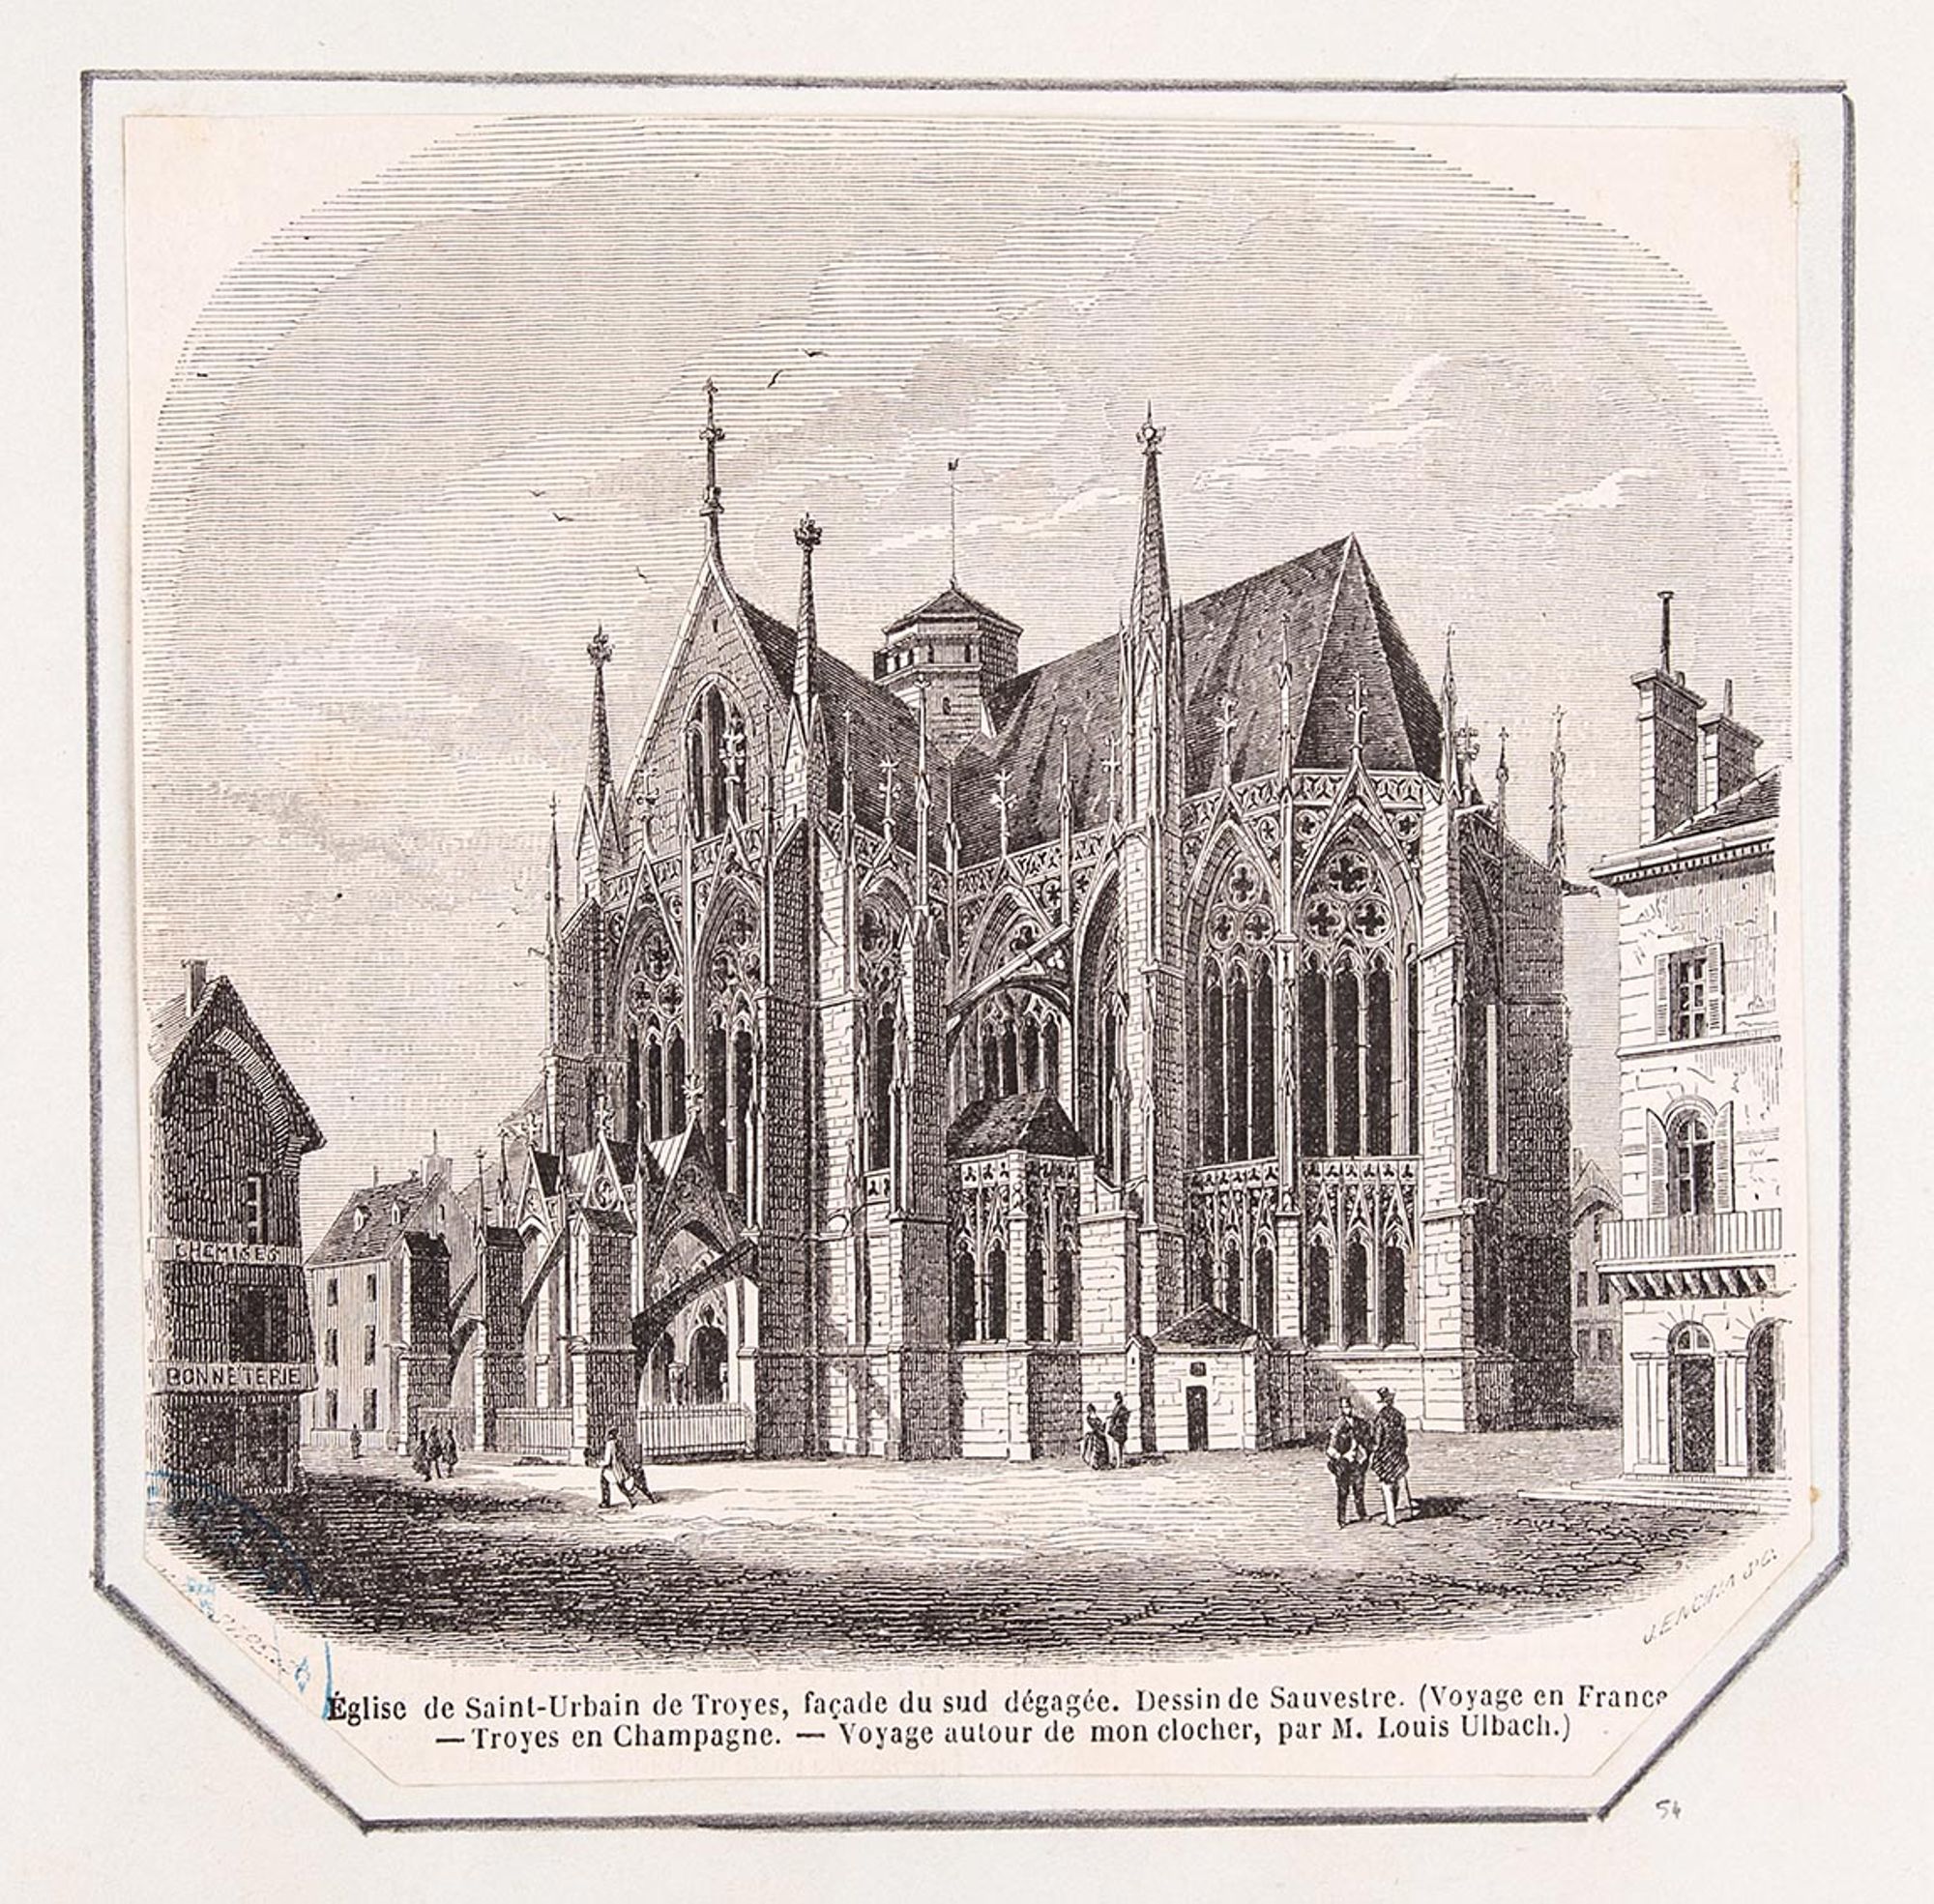 Lithographie. « Eglise de Saint-Urbain de Troyes, façade du sud dégagée. Dessin de Sauvestre (Voyage en France - Troyes en Champagne. - Voyage autour de mon clocher, par M. Louis Ulbach) ».